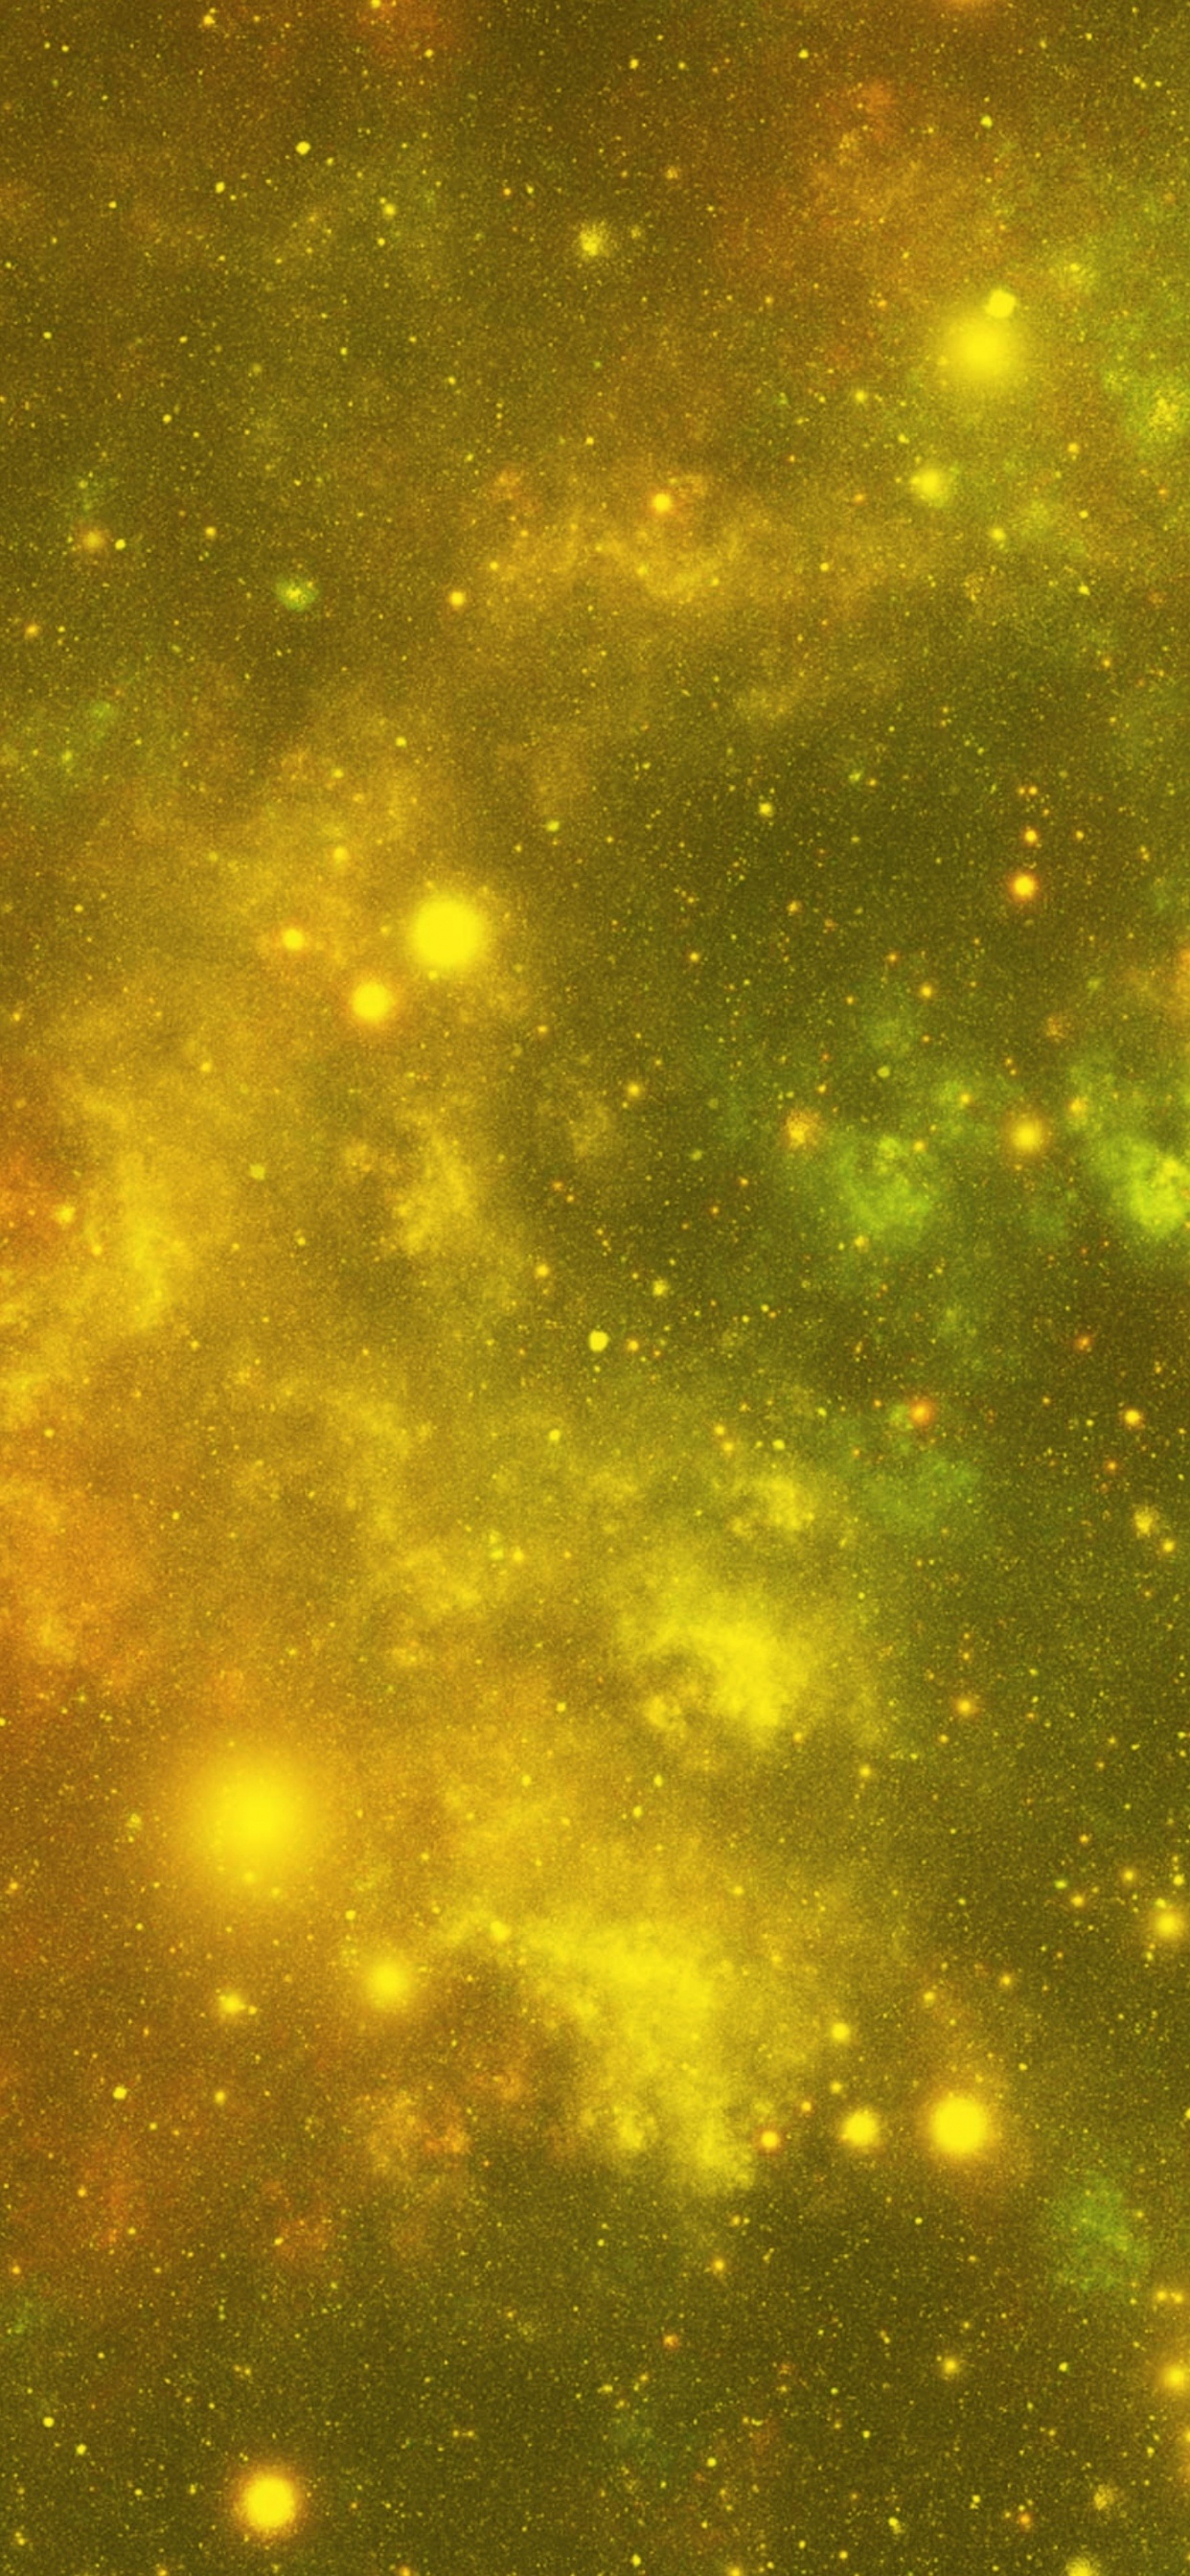 Estrellas Verdes y Amarillas en el Cielo. Wallpaper in 1242x2688 Resolution